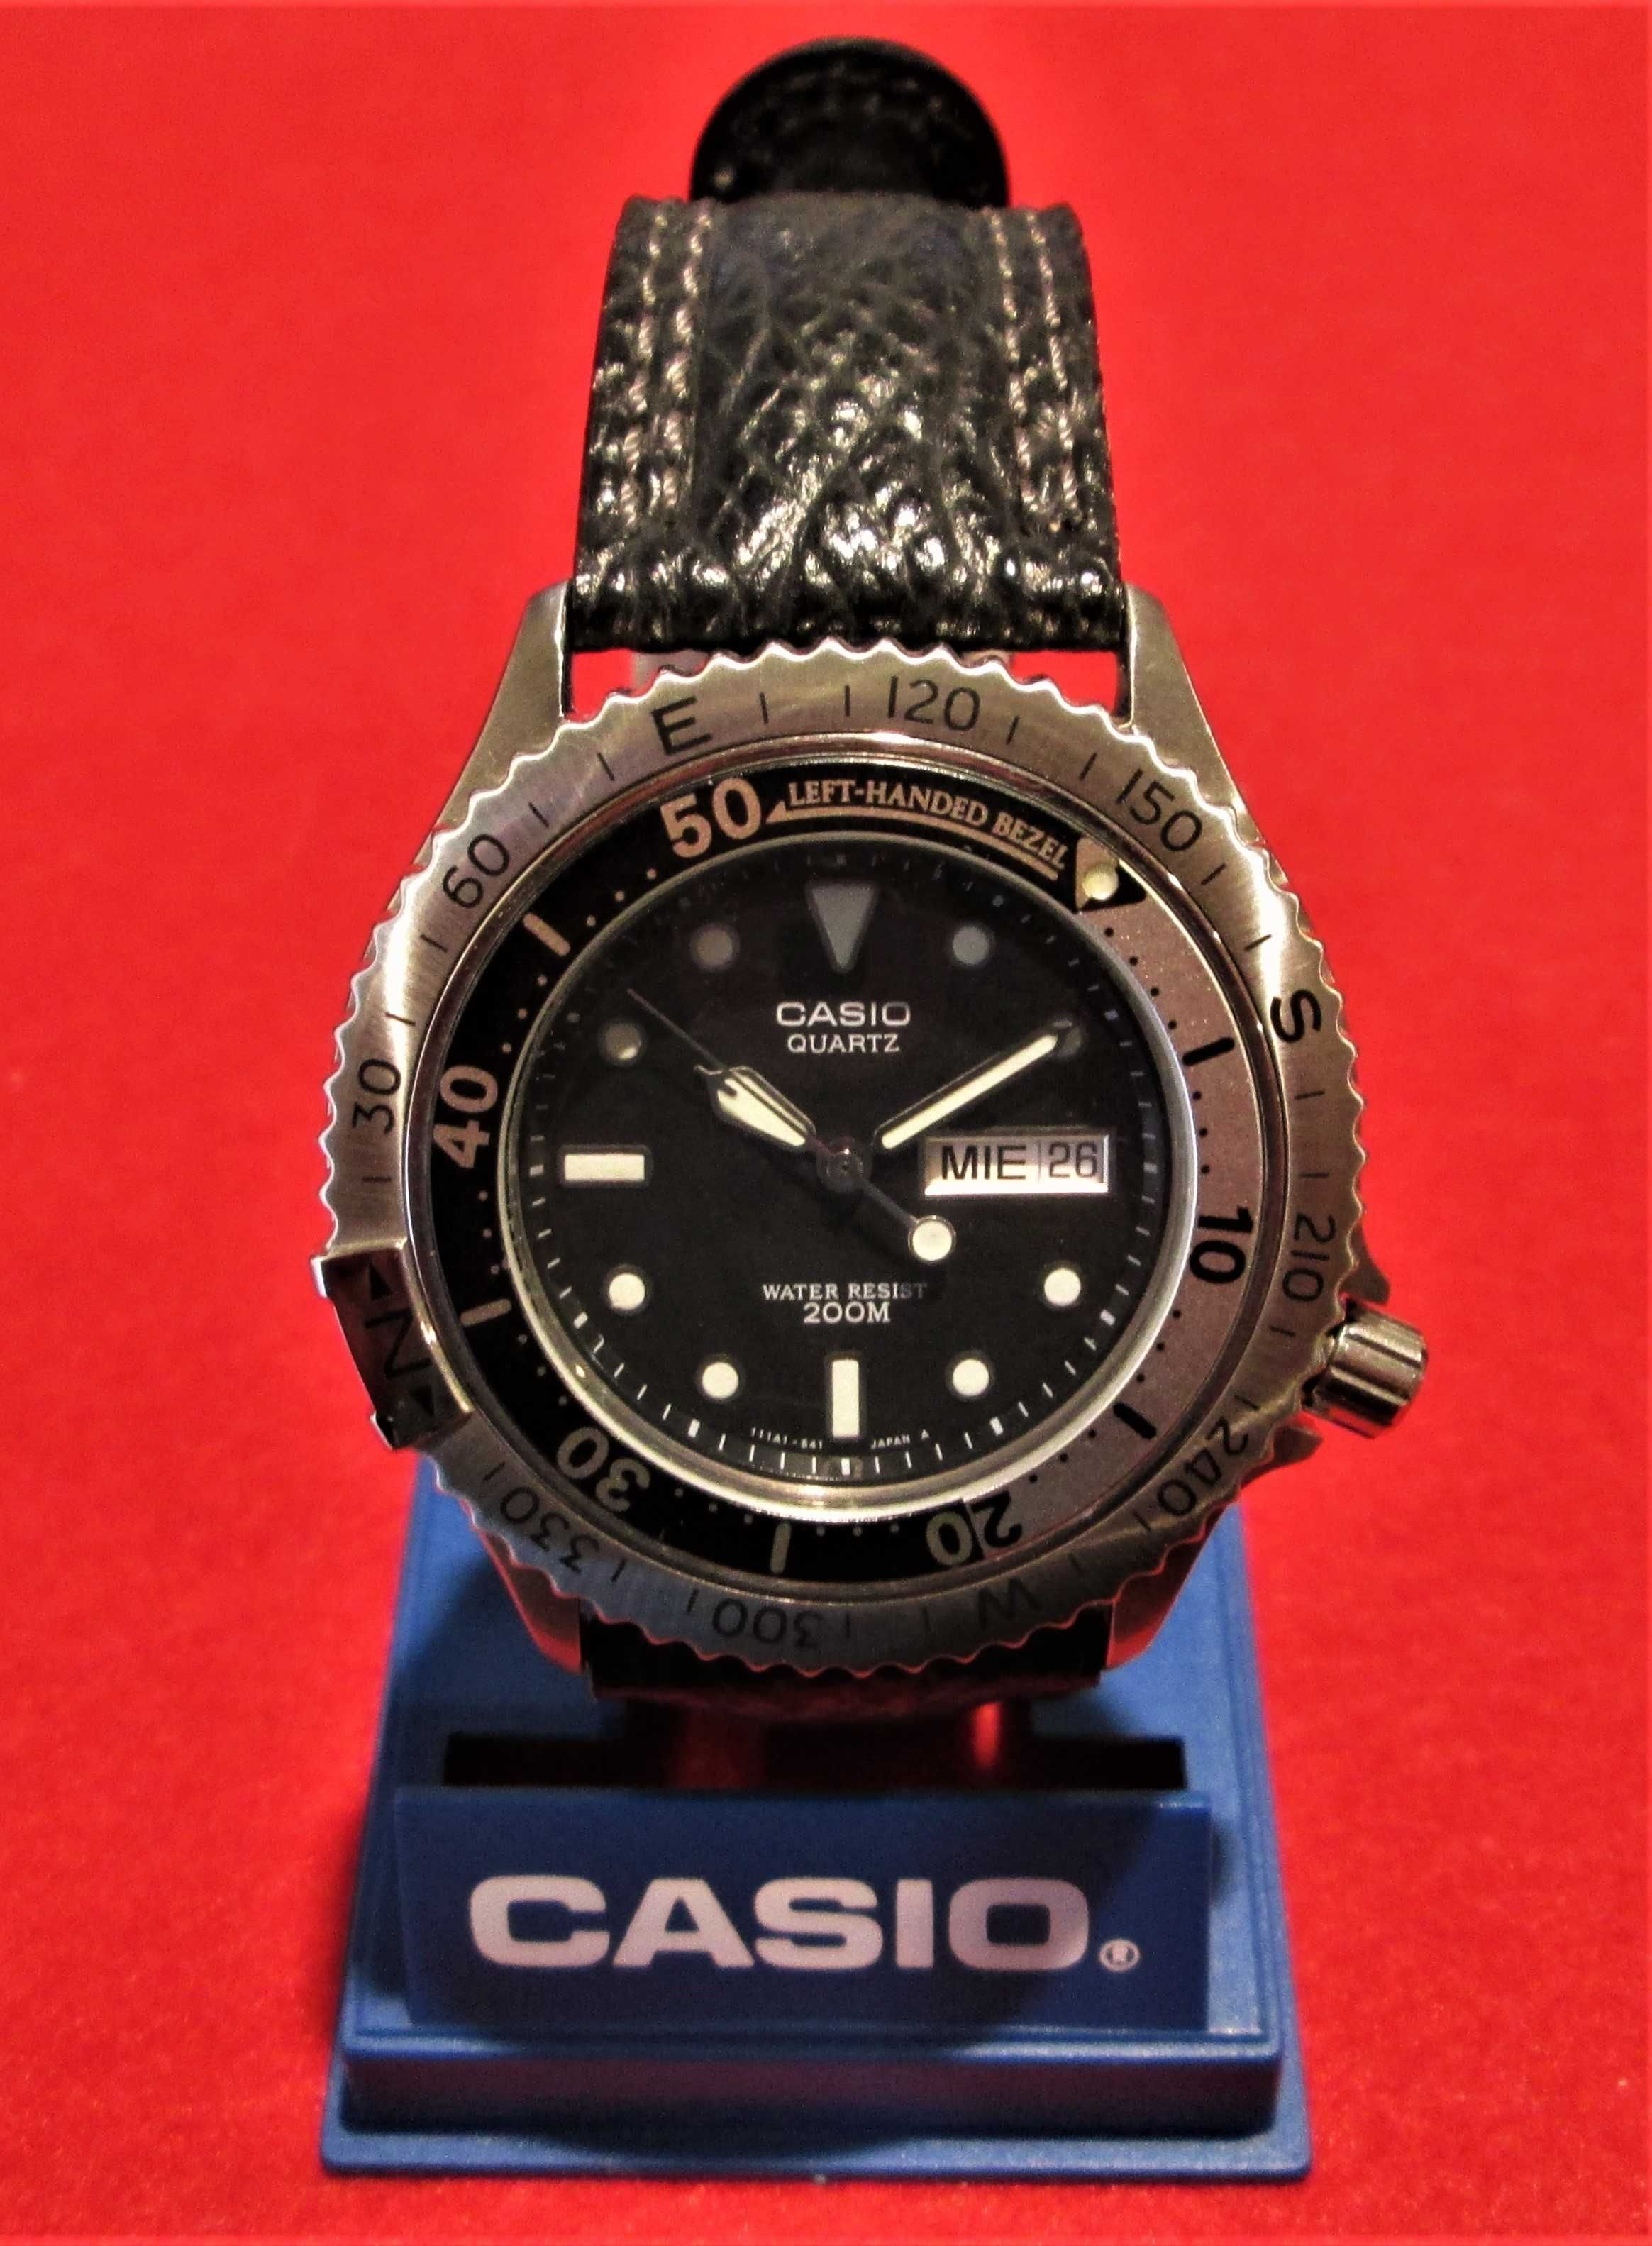 CASIO MD-708 Relógio de Mergulho em AÇO INOX - NOVO Stock Antigo 1989